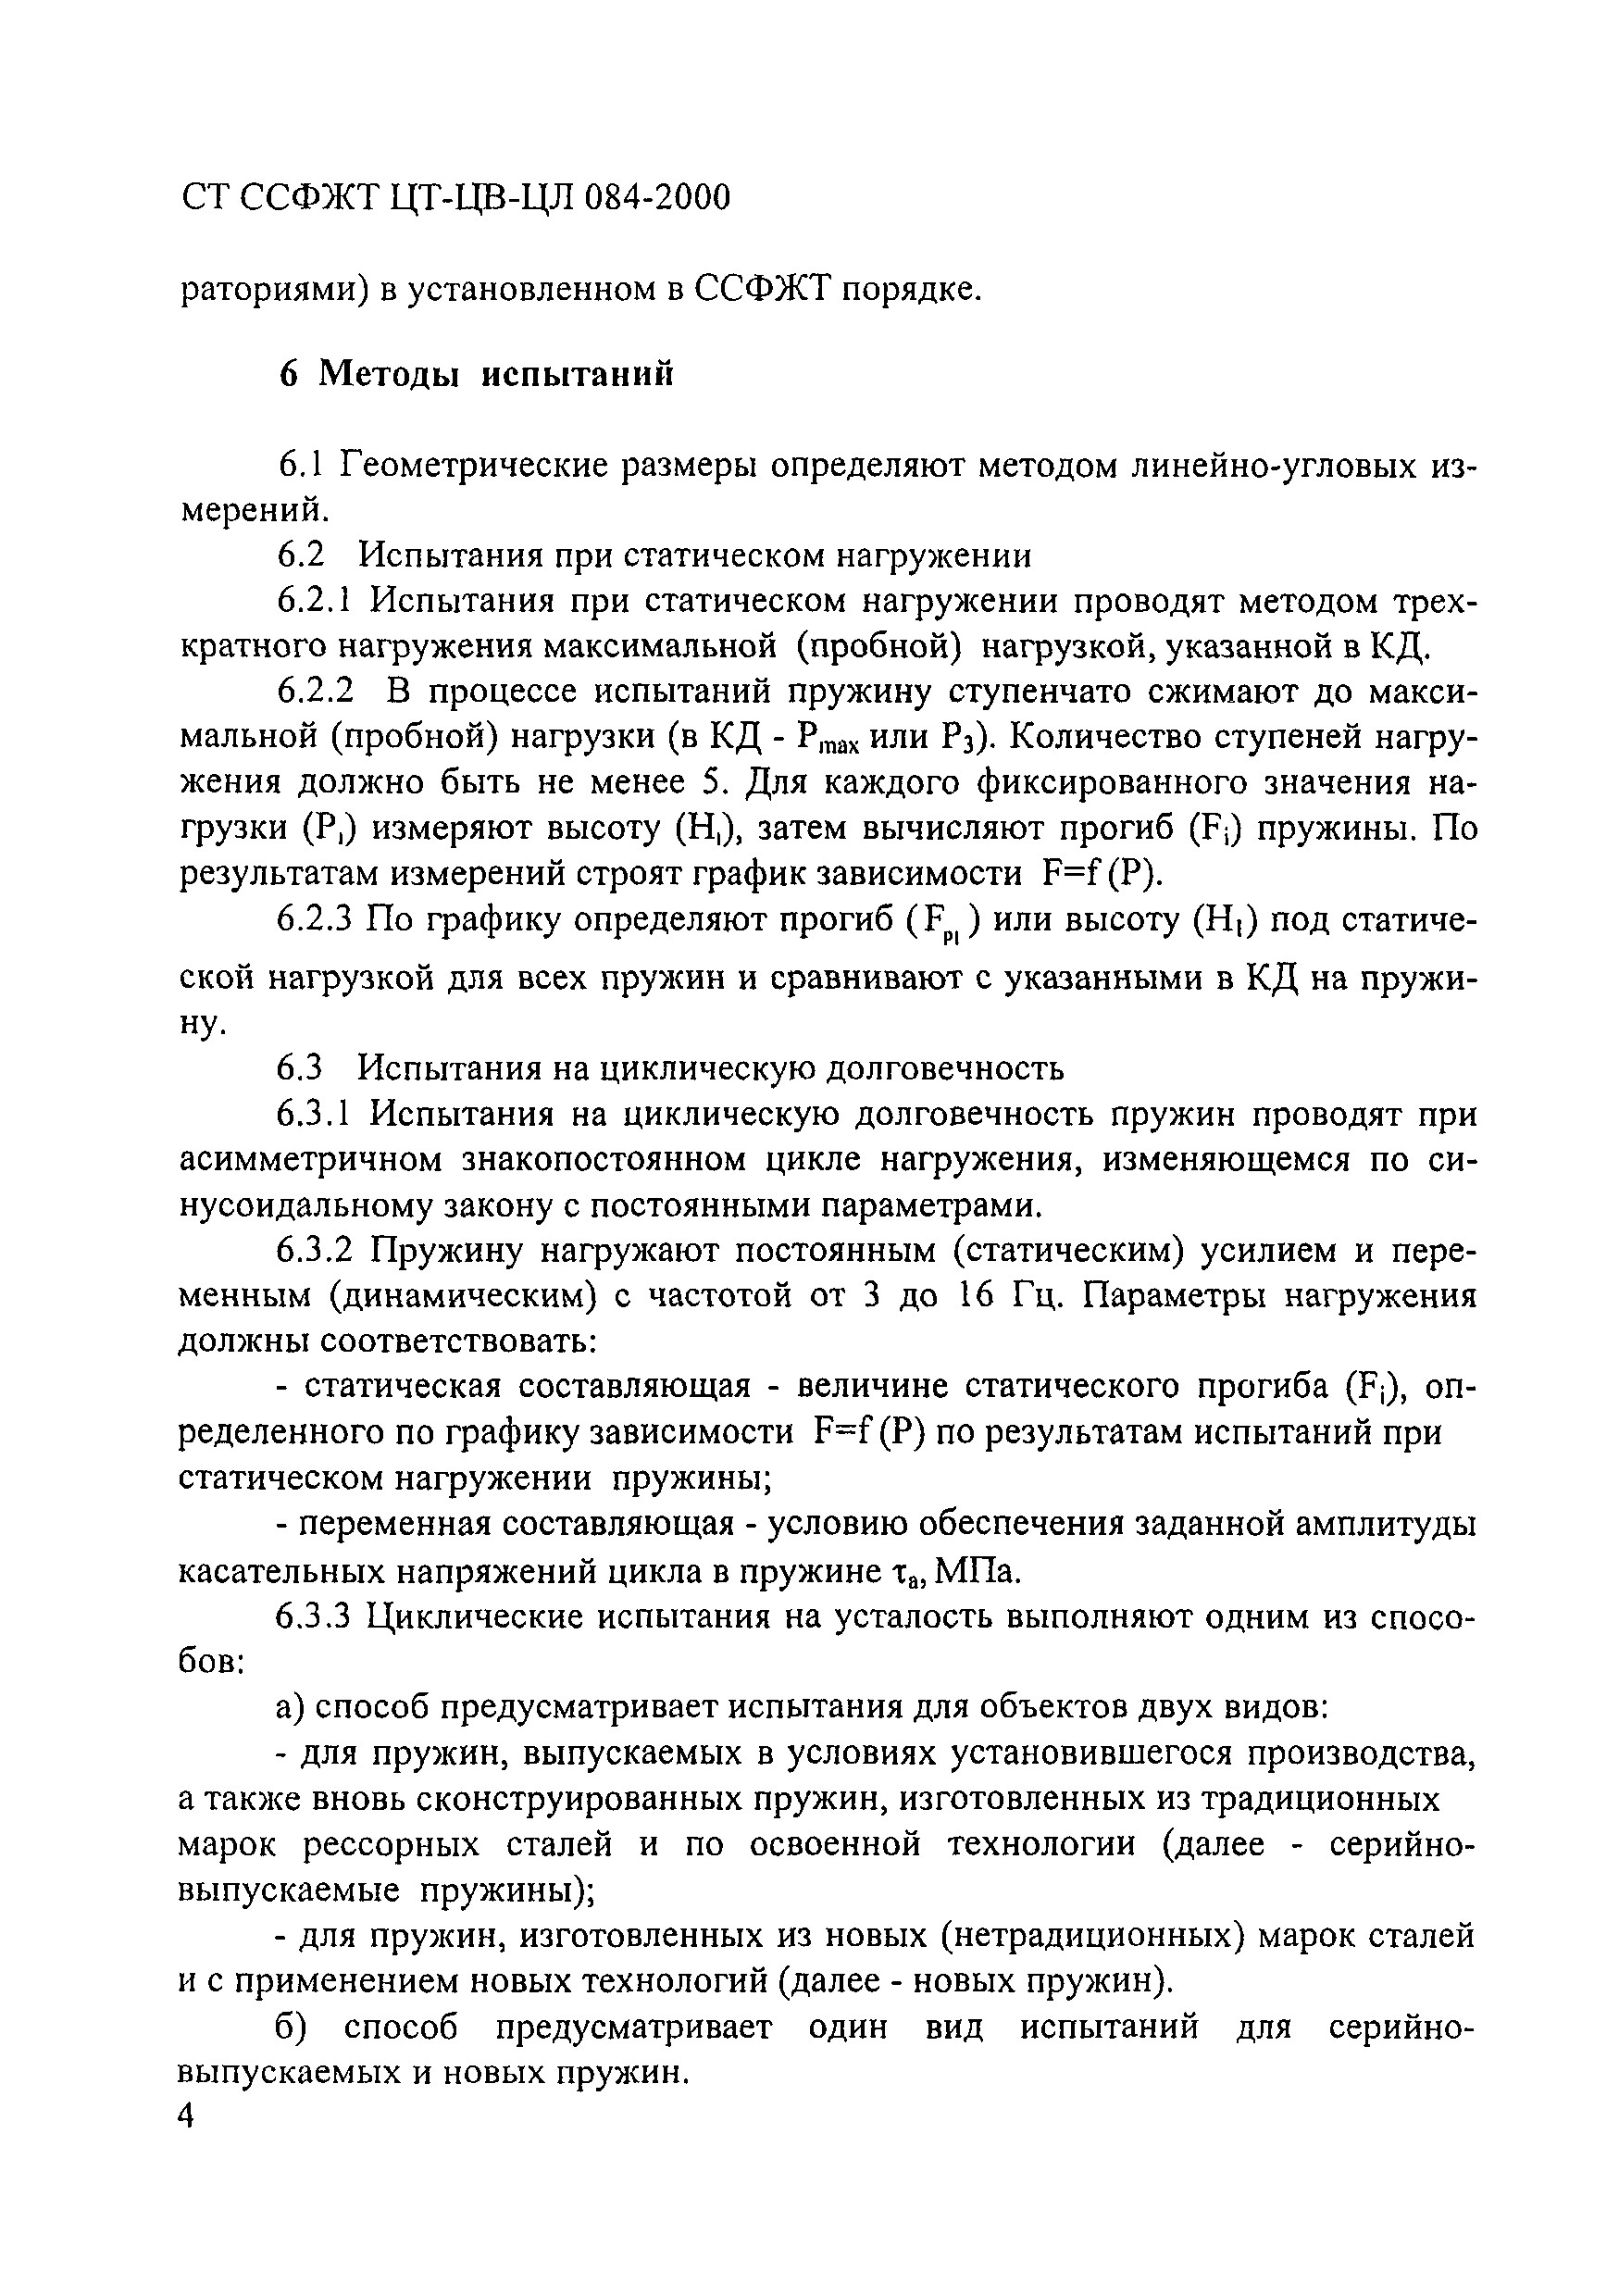 СТ ССФЖТ ЦТ-ЦВ-ЦЛ 084-2000